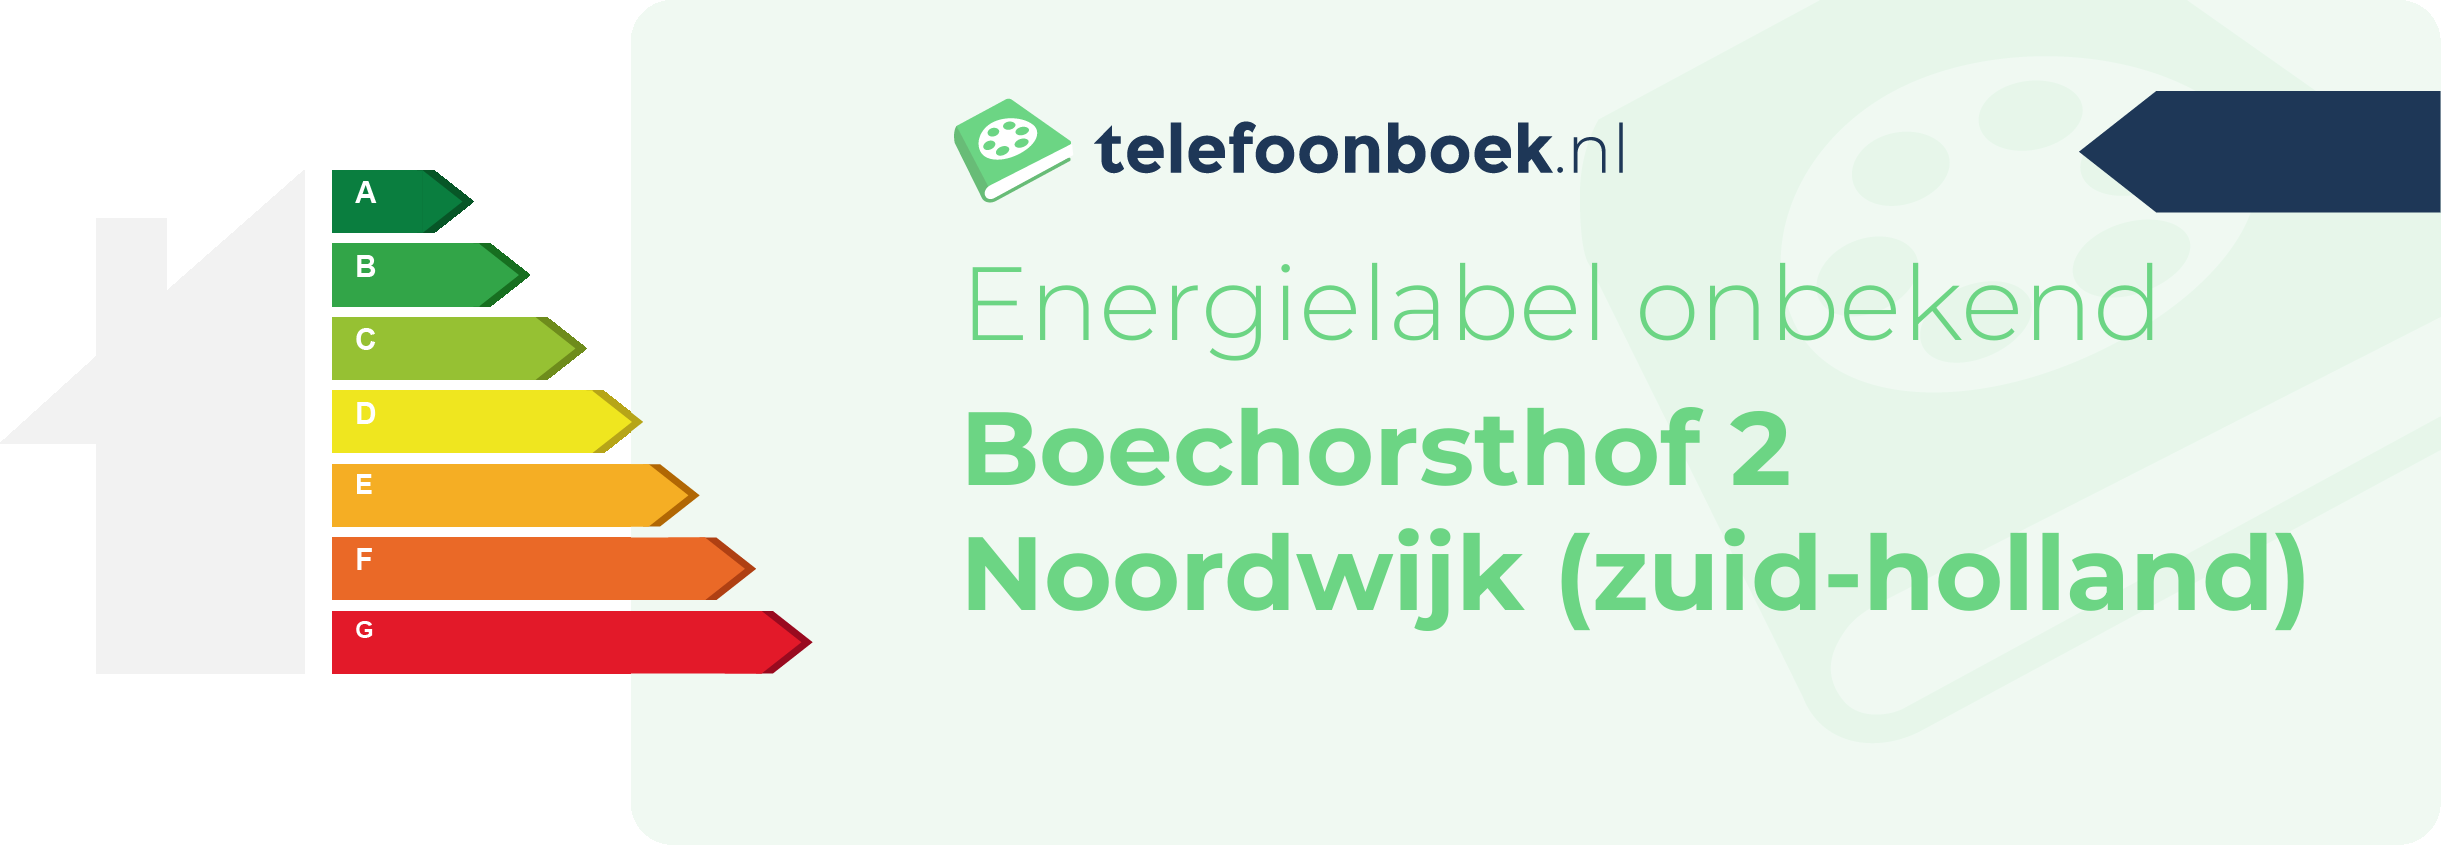 Energielabel Boechorsthof 2 Noordwijk (Zuid-Holland)